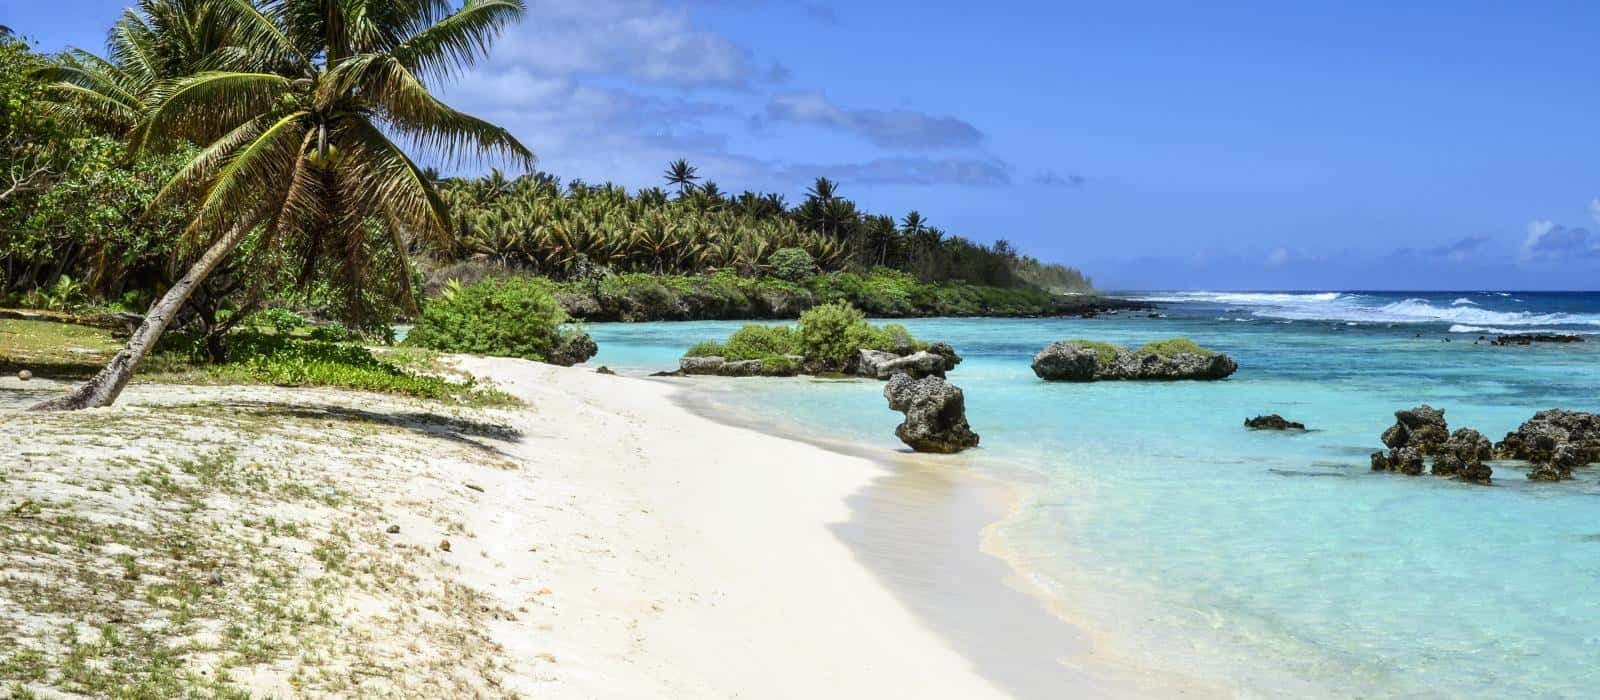 Conheça a linda e remota Ilha das Marianas Setentrionais